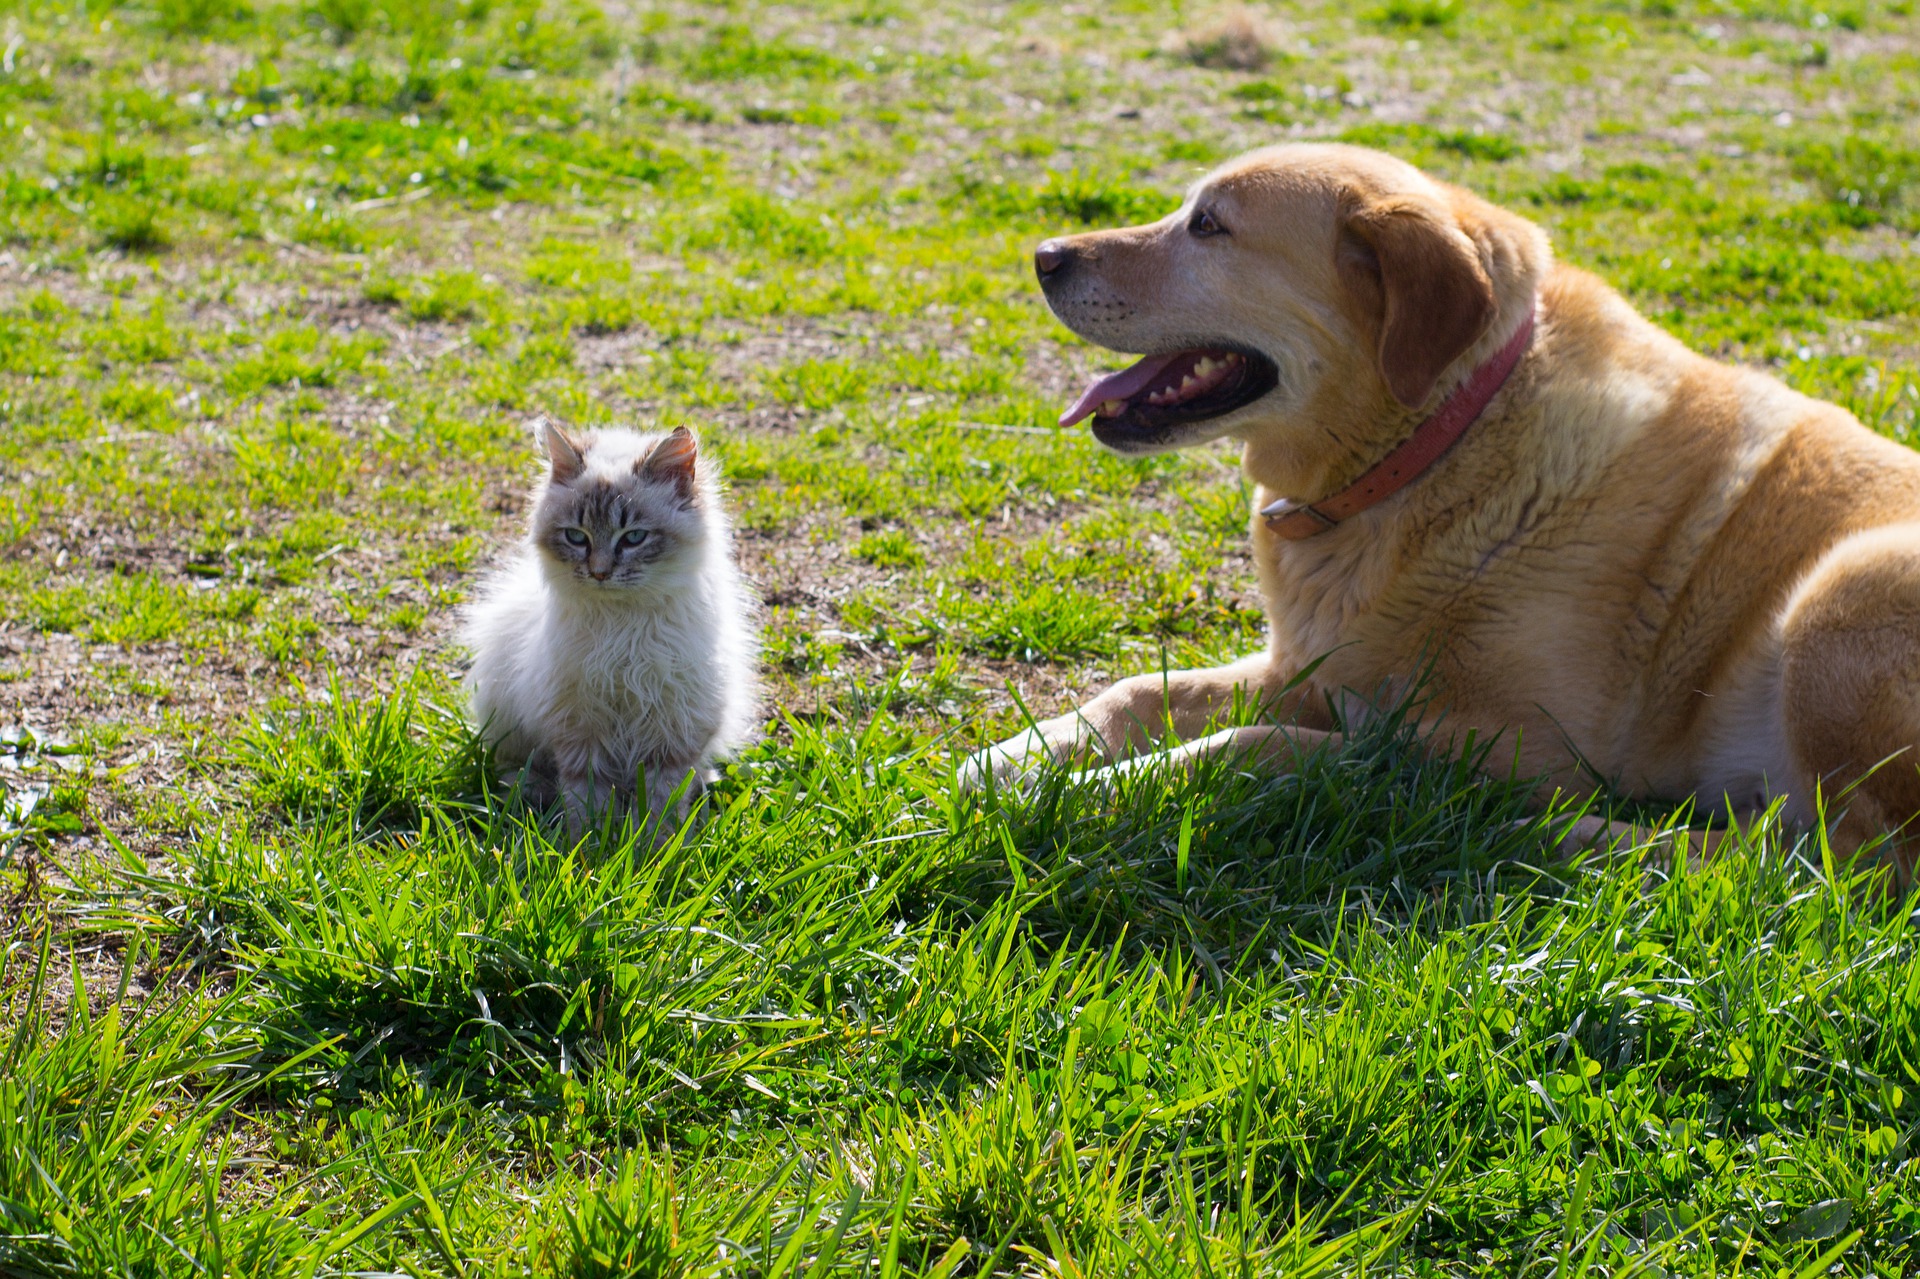 งานวิจัยล่าสุดพบว่า แมวและสุนัขสามารถติดโควิด-19 จากเจ้าของได้!